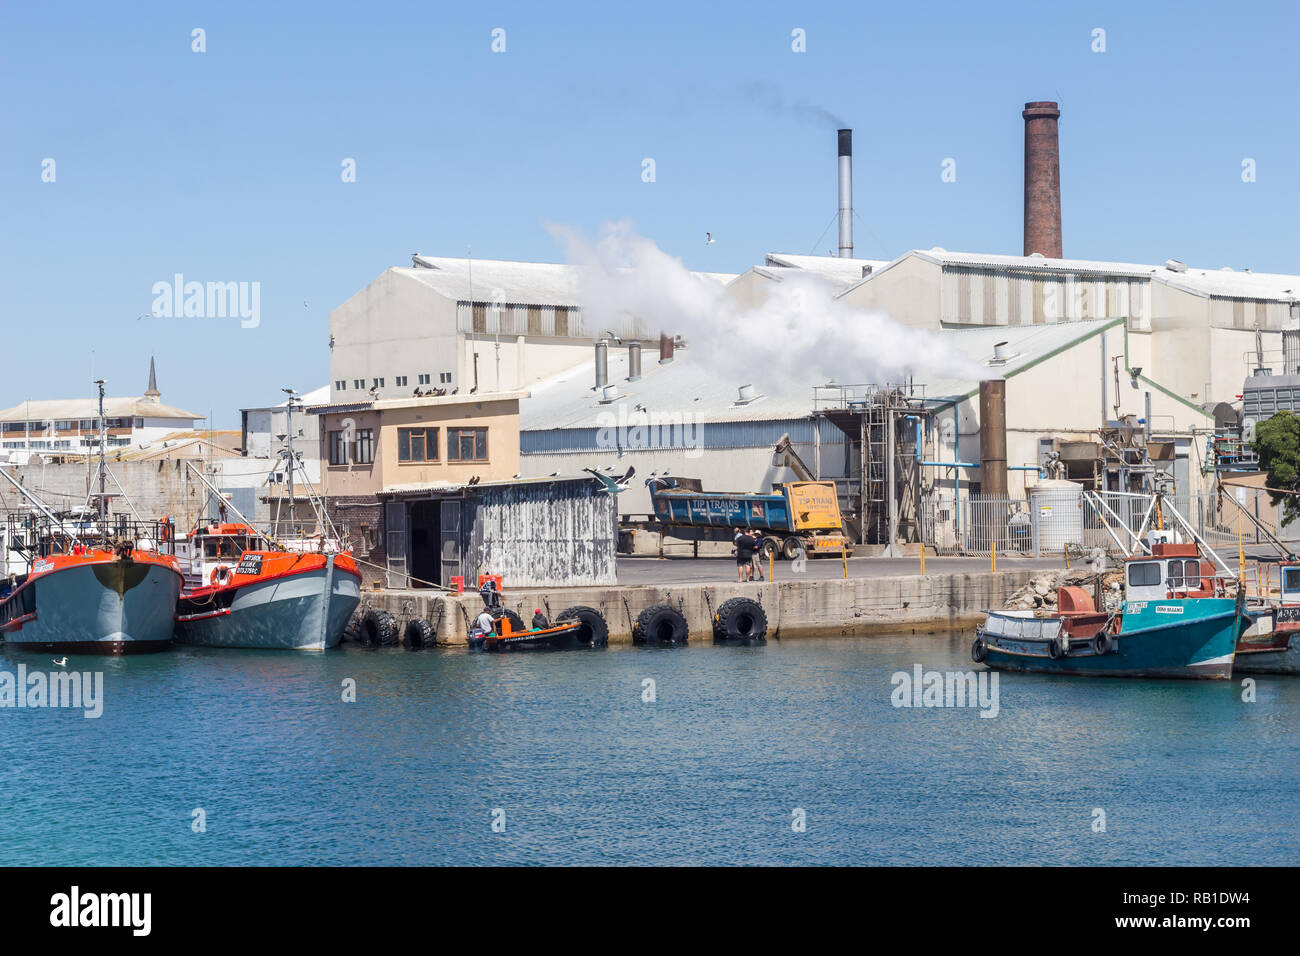 Lambert's Bay, Südafrika - Dezember 20, 2018: Bild von Lambert's Bay Hafen mit Fischkuttern und fischverarbeitende Fabrik mit Schornsteinen in der Ba Stockfoto